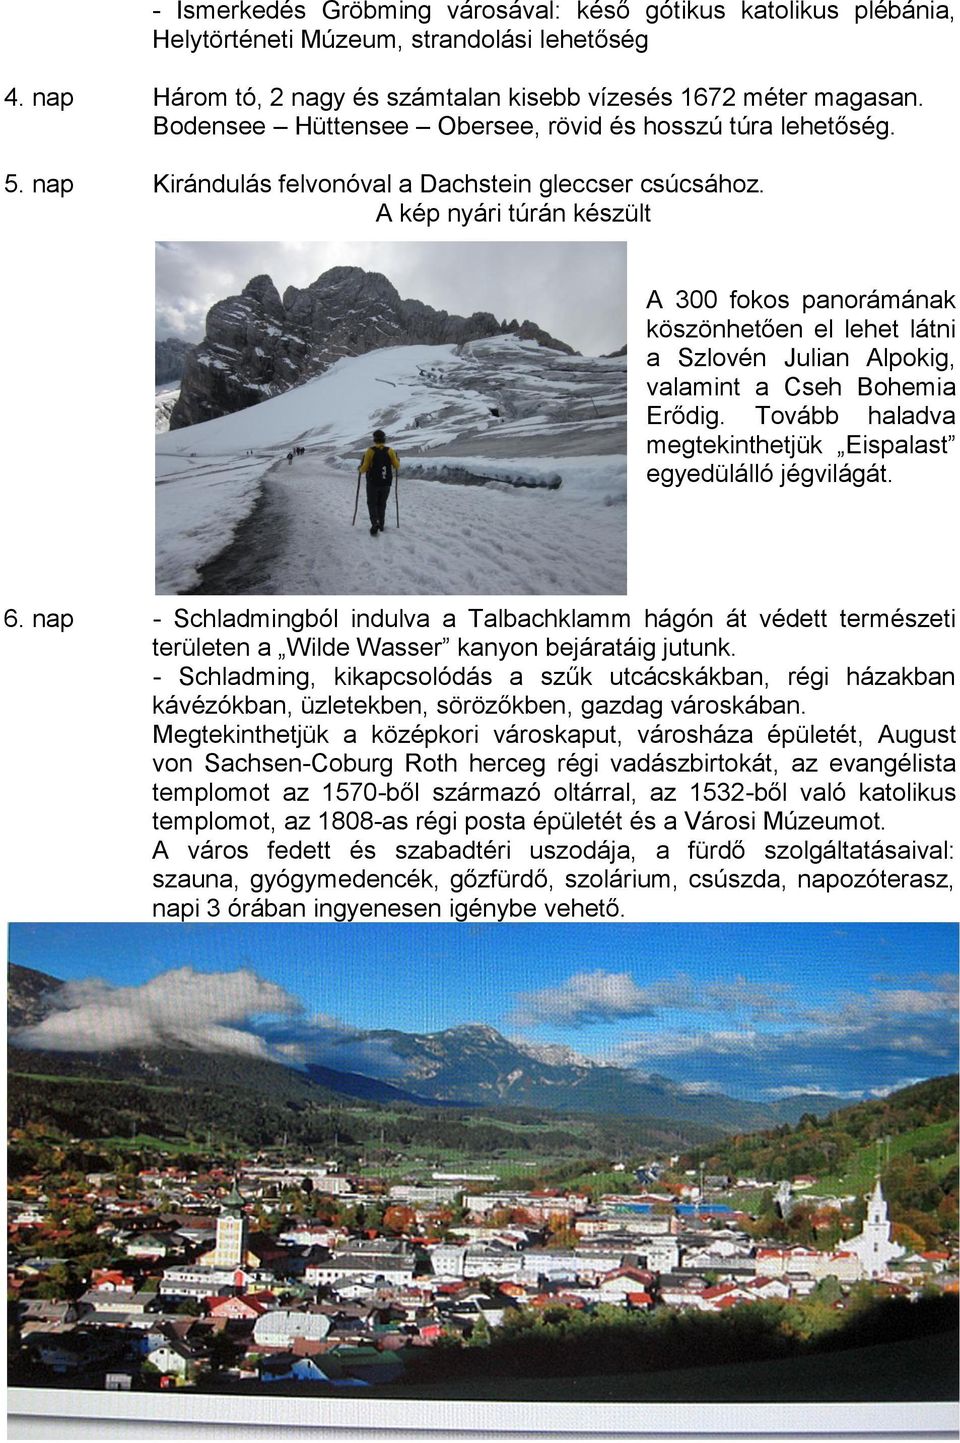 A kép nyári túrán készült A 300 fokos panorámának köszönhetően el lehet látni a Szlovén Julian Alpokig, valamint a Cseh Bohemia Erődig. Tovább haladva megtekinthetjük Eispalast egyedülálló jégvilágát.